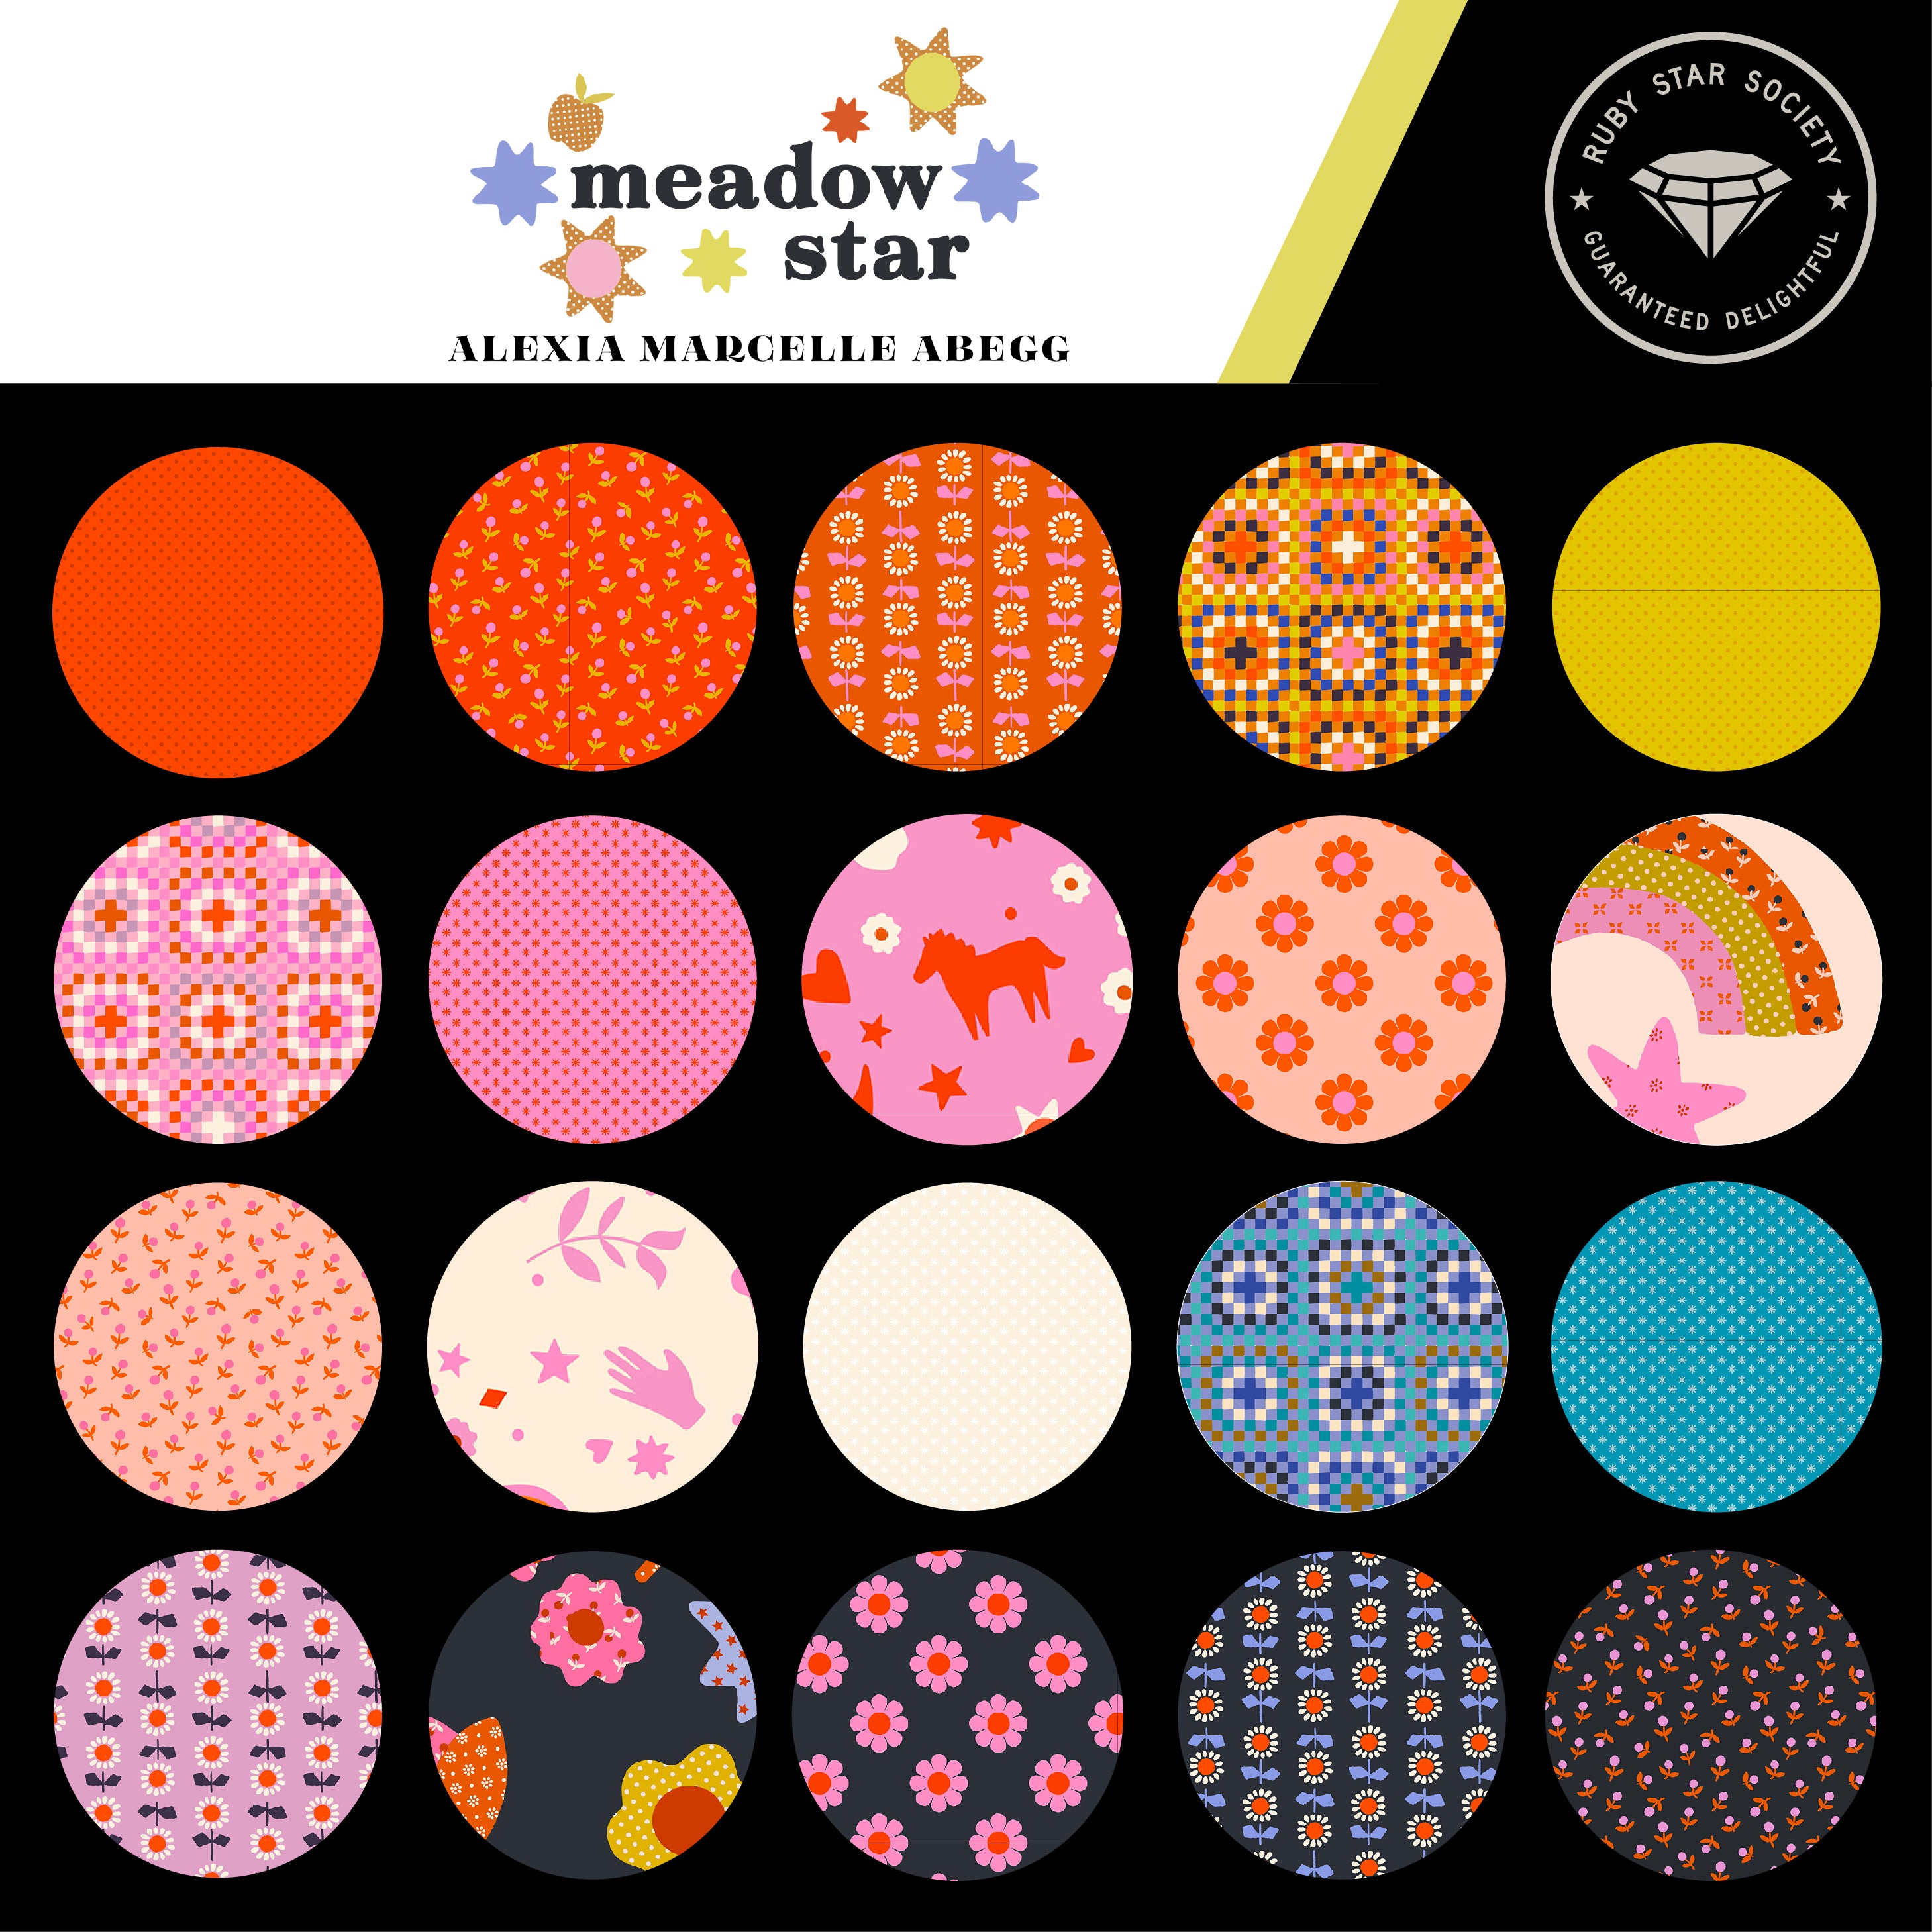 Meadow Star Fat Quarter Bundle by Alexia Abegg for Moda Fabrics